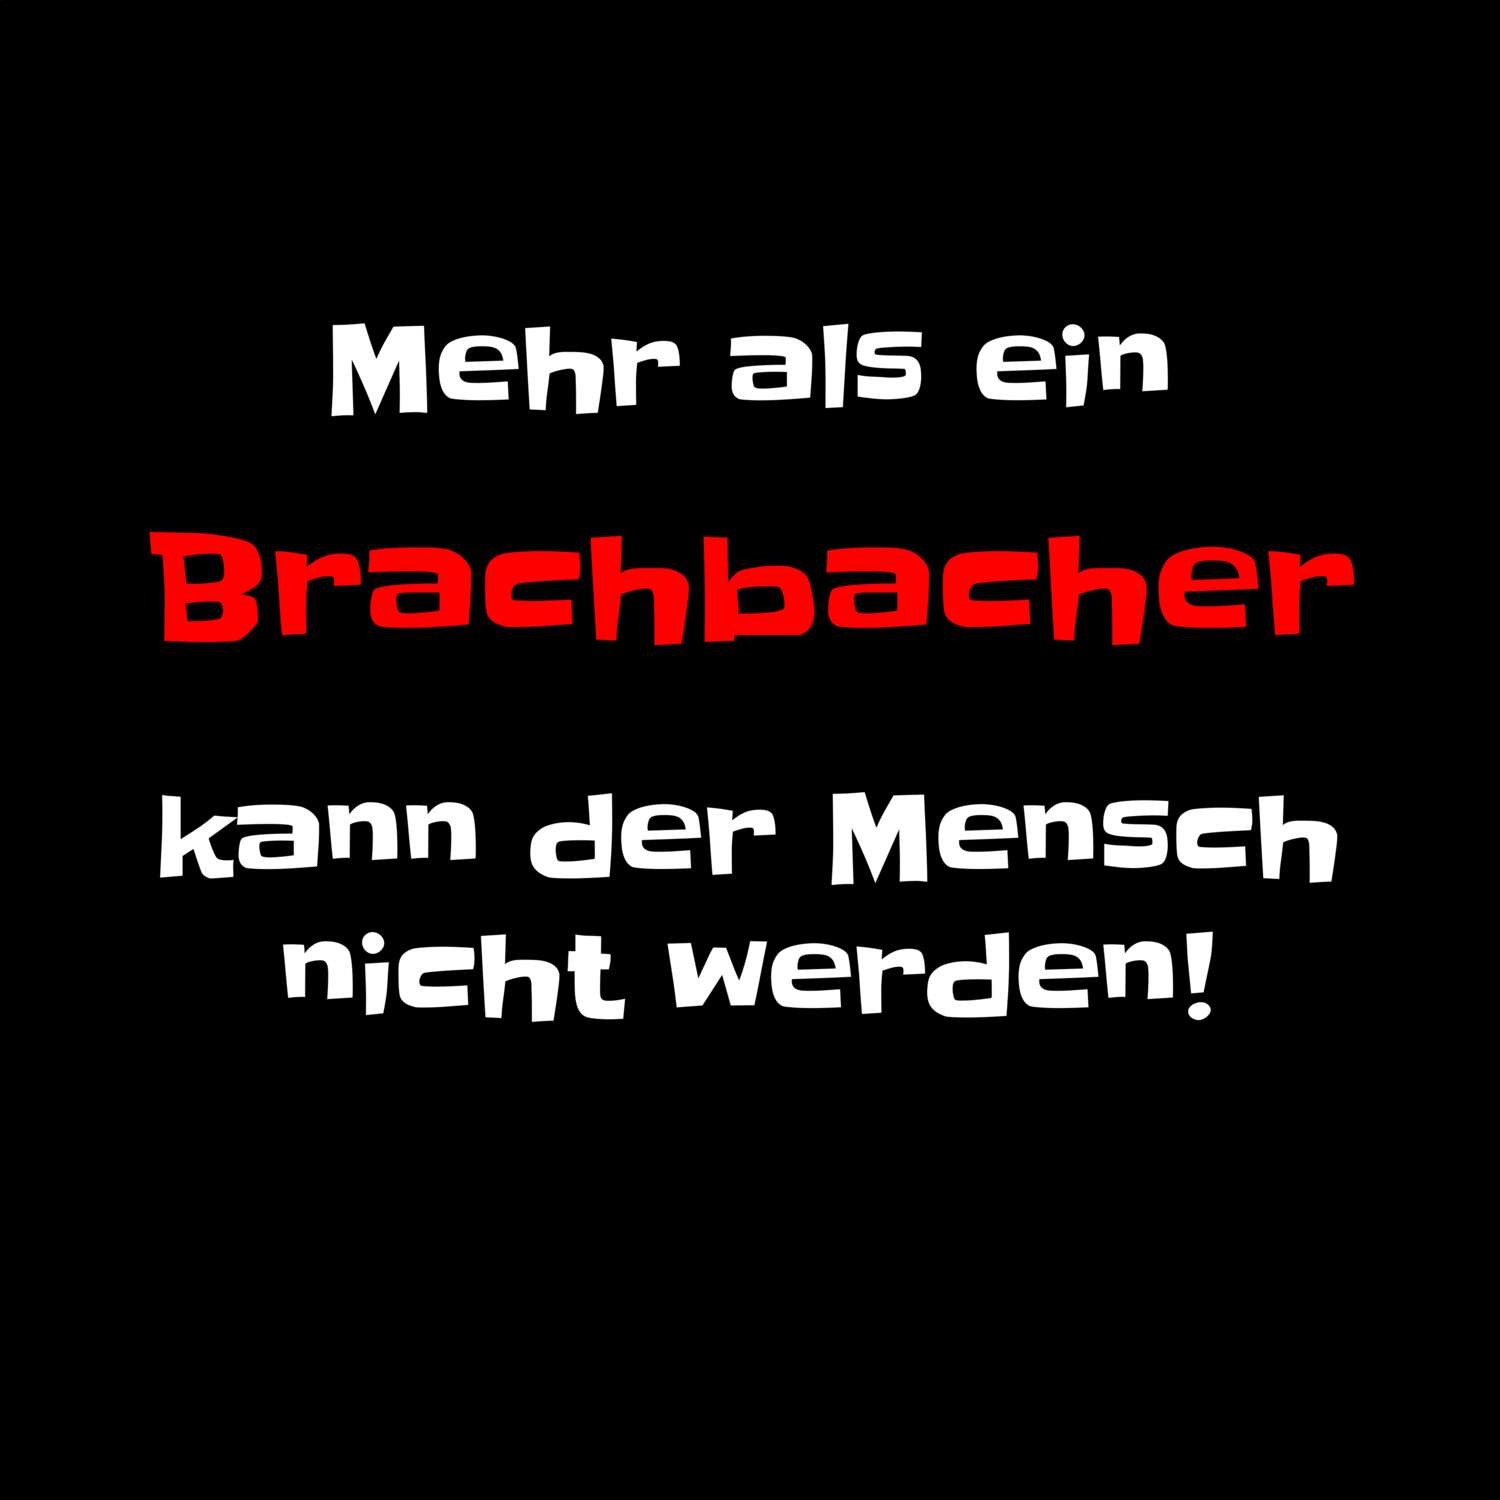 Brachbach T-Shirt »Mehr als ein«